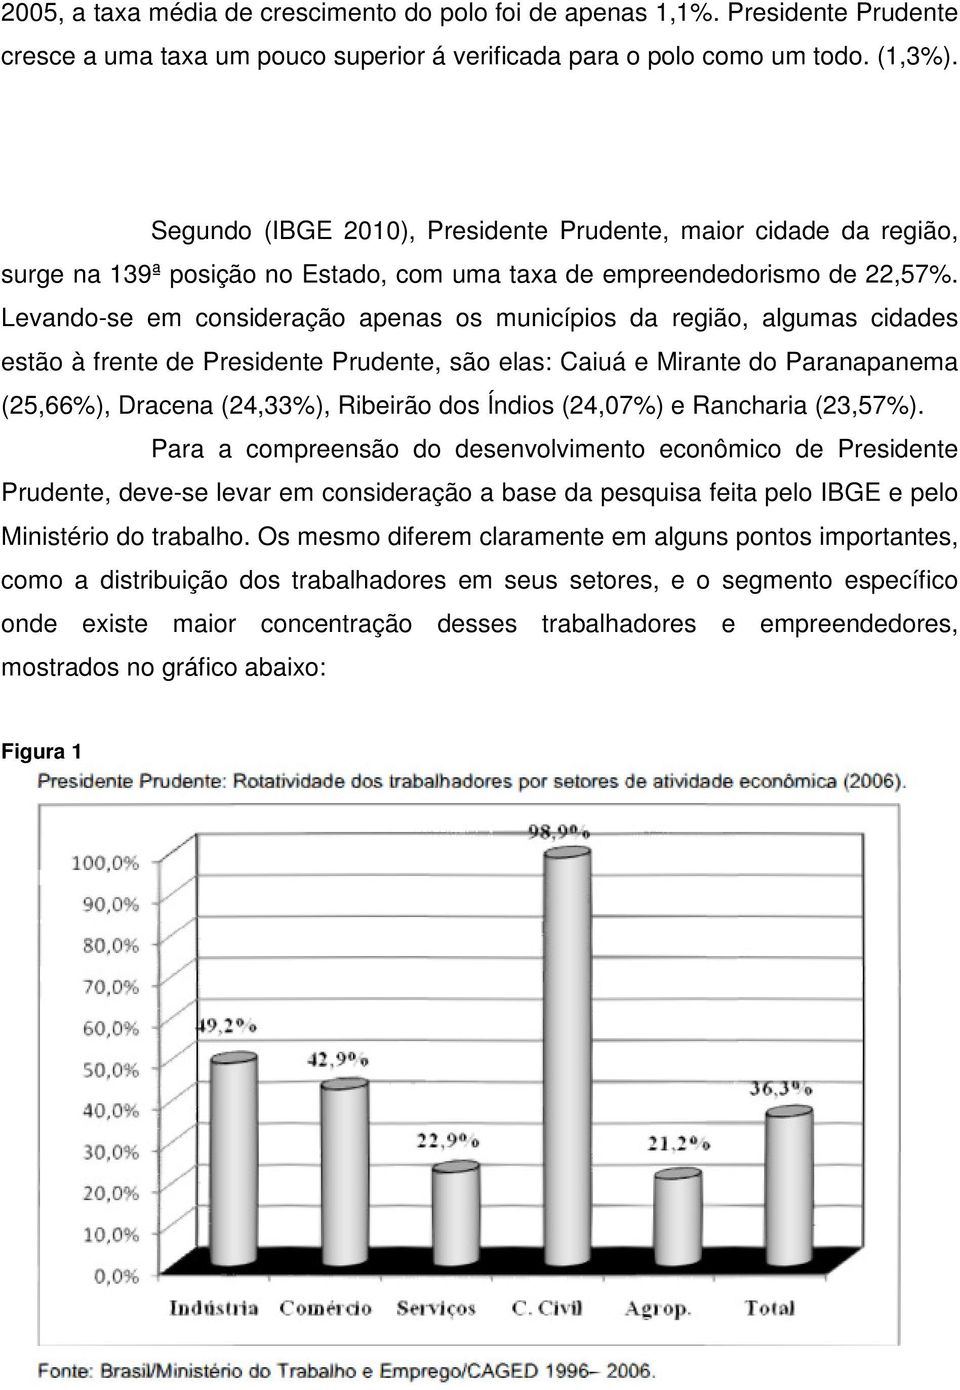 Levando-se em consideração apenas os municípios da região, algumas cidades estão à frente de Presidente Prudente, são elas: Caiuá e Mirante do Paranapanema (25,66%), Dracena (24,33%), Ribeirão dos